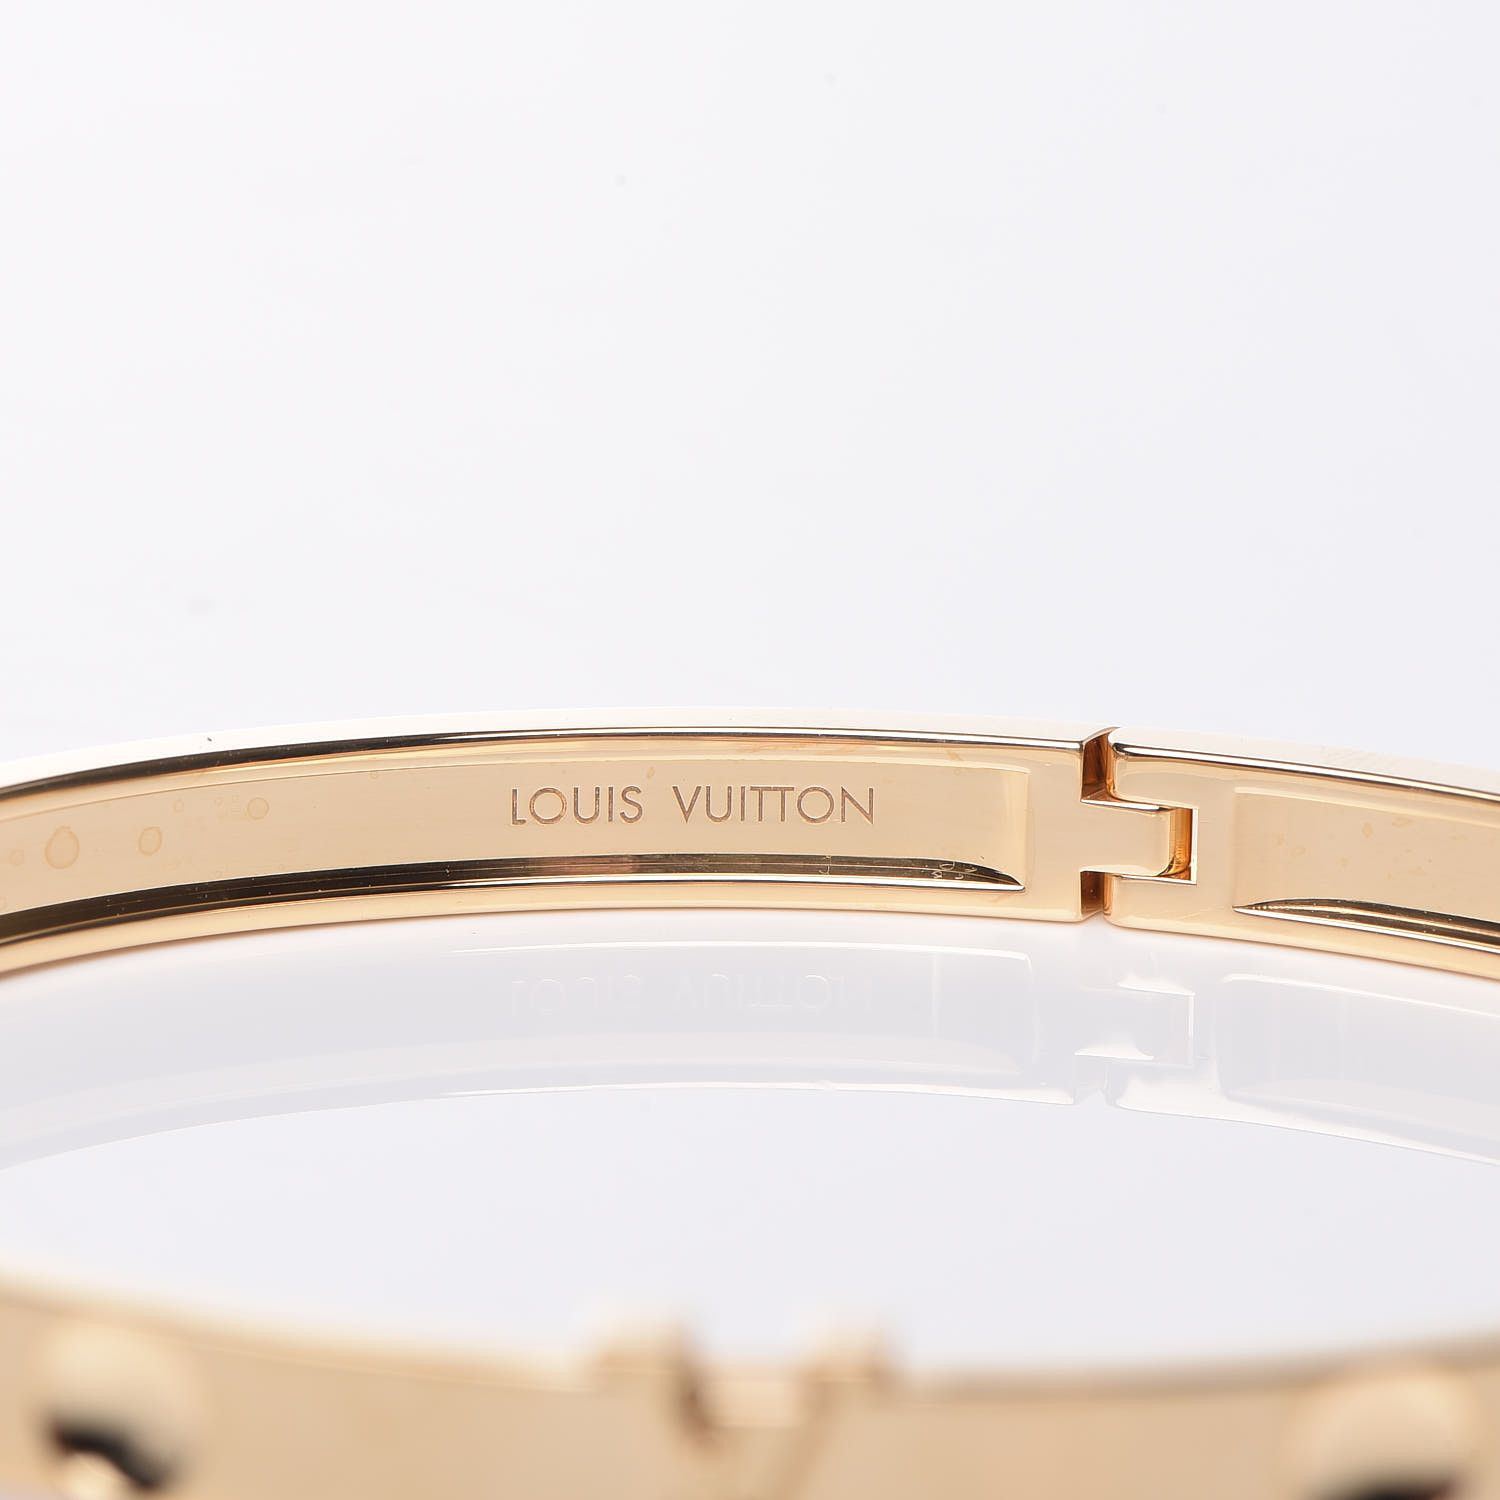 LOUIS VUITTON 18K Yellow Gold Empreinte Bangle Bracelet 17 423595